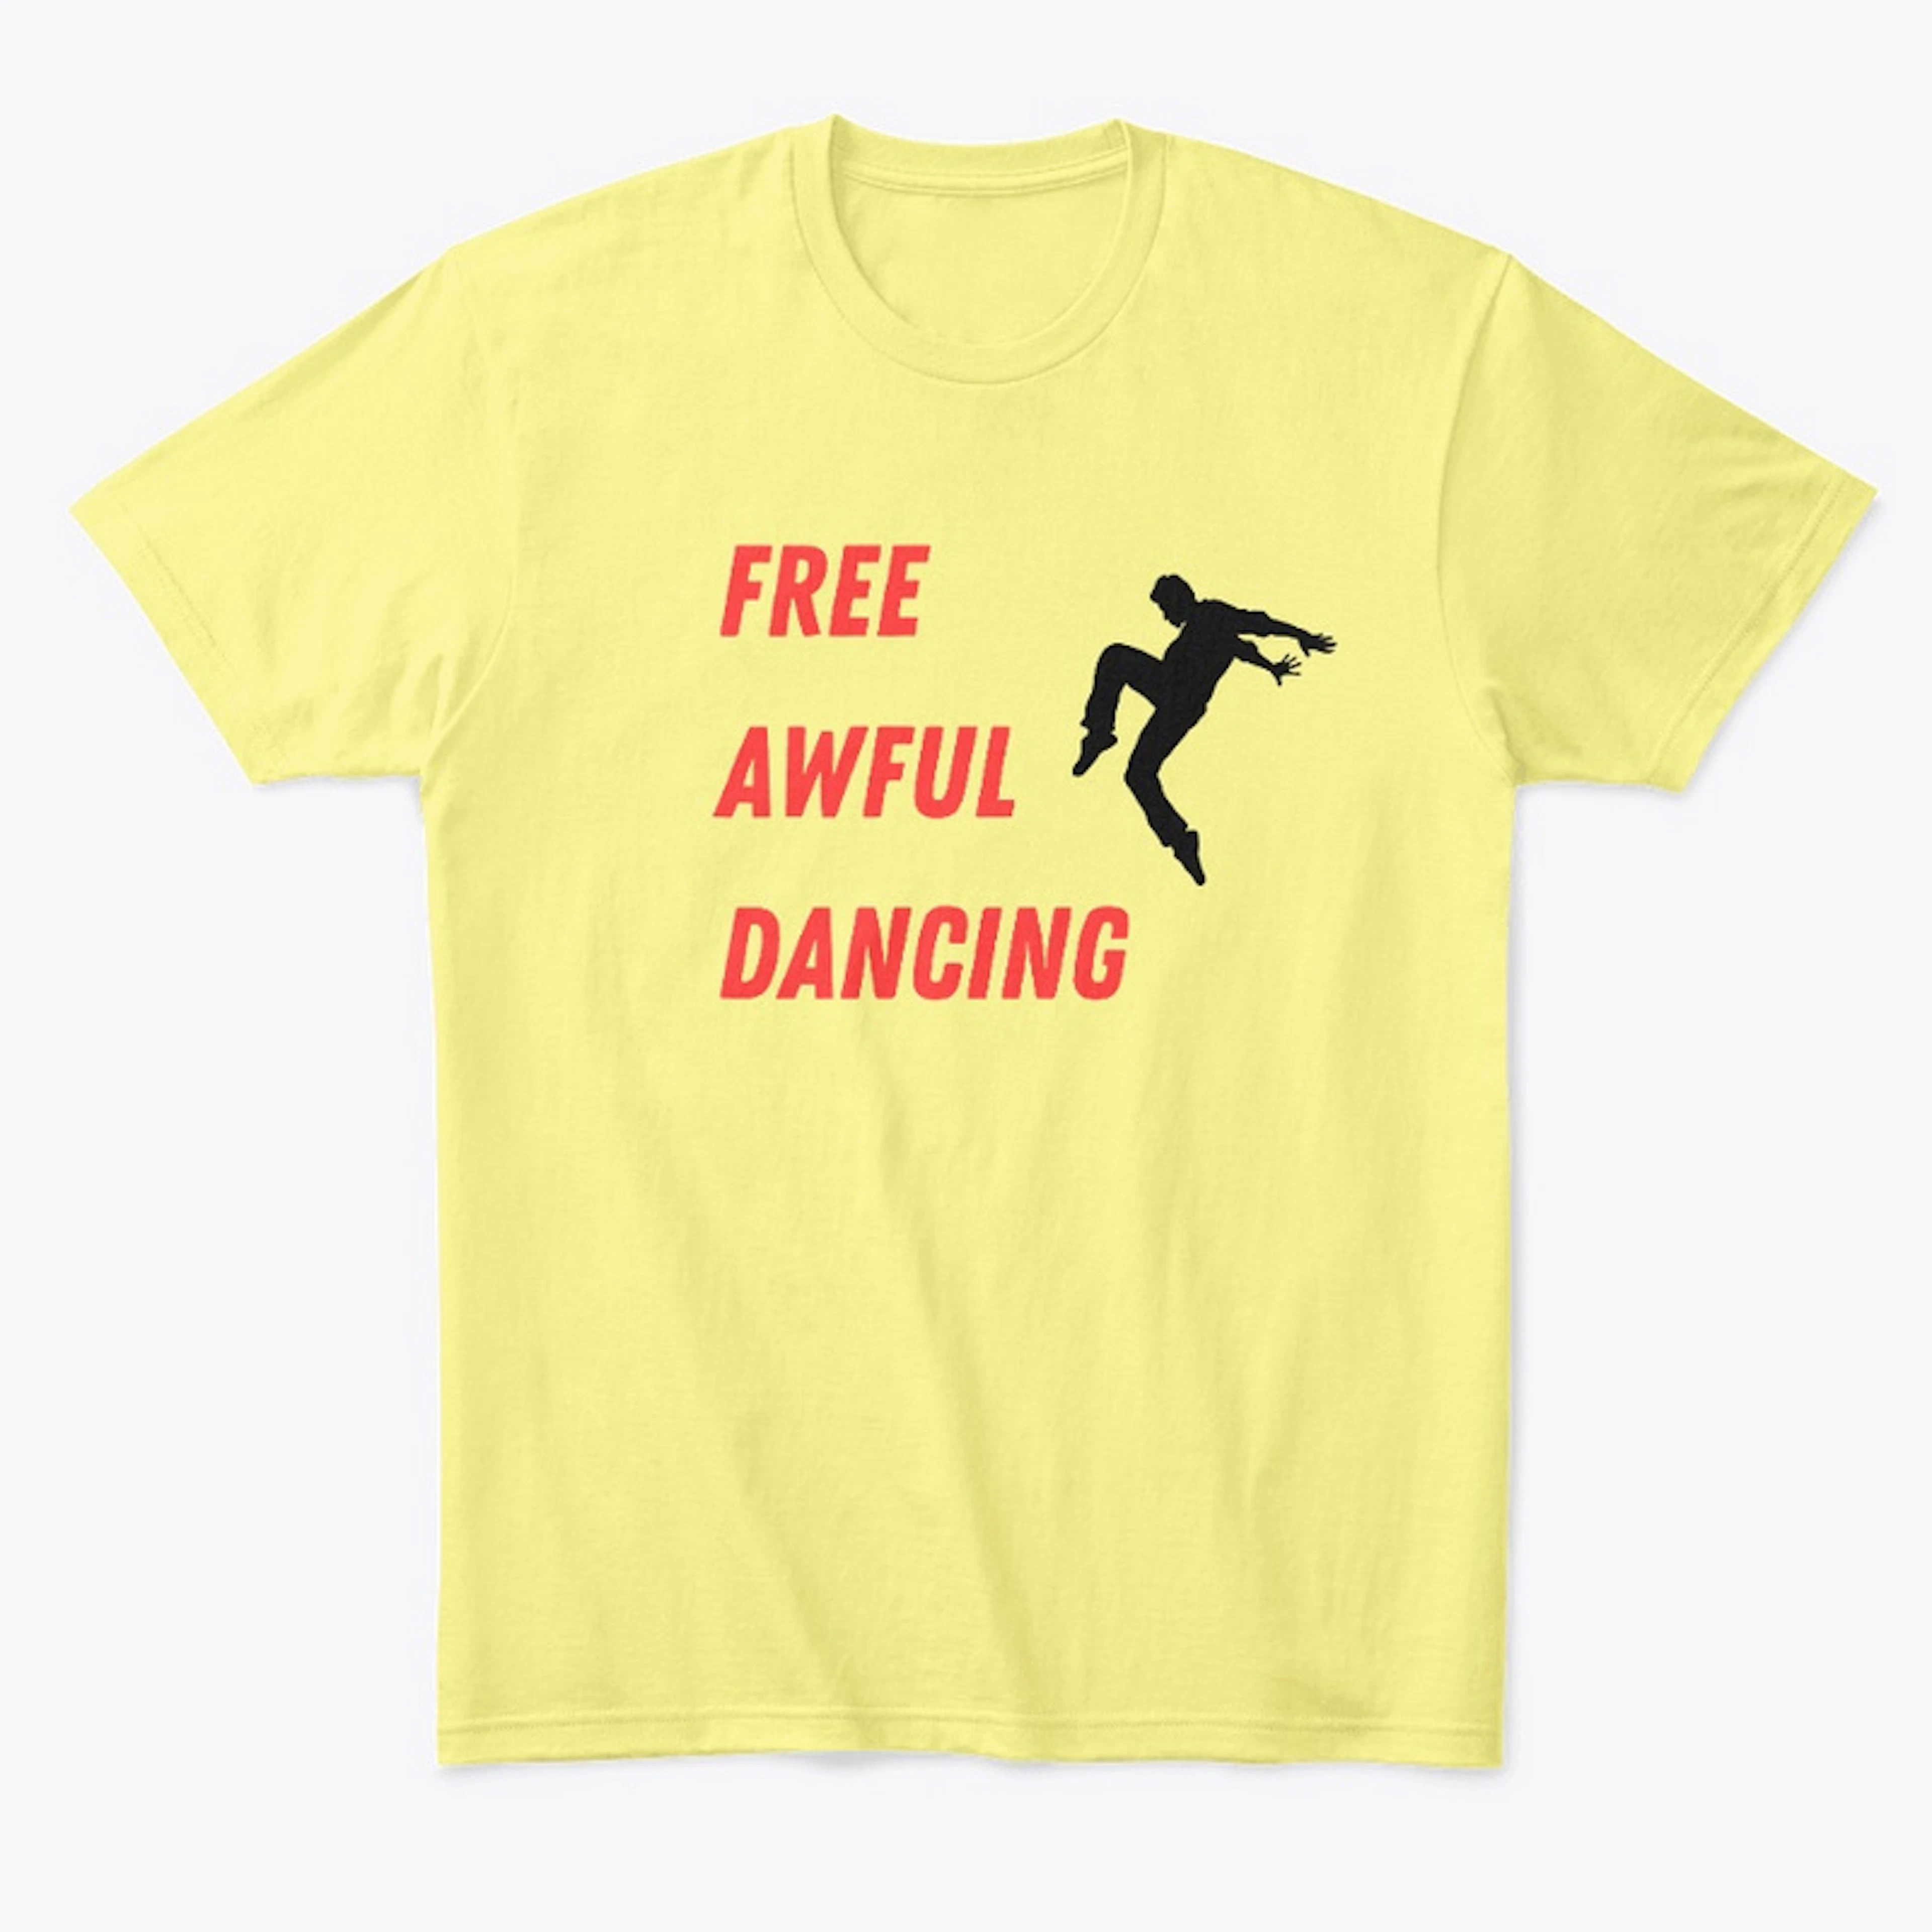 Free Awful Dancing Shirt